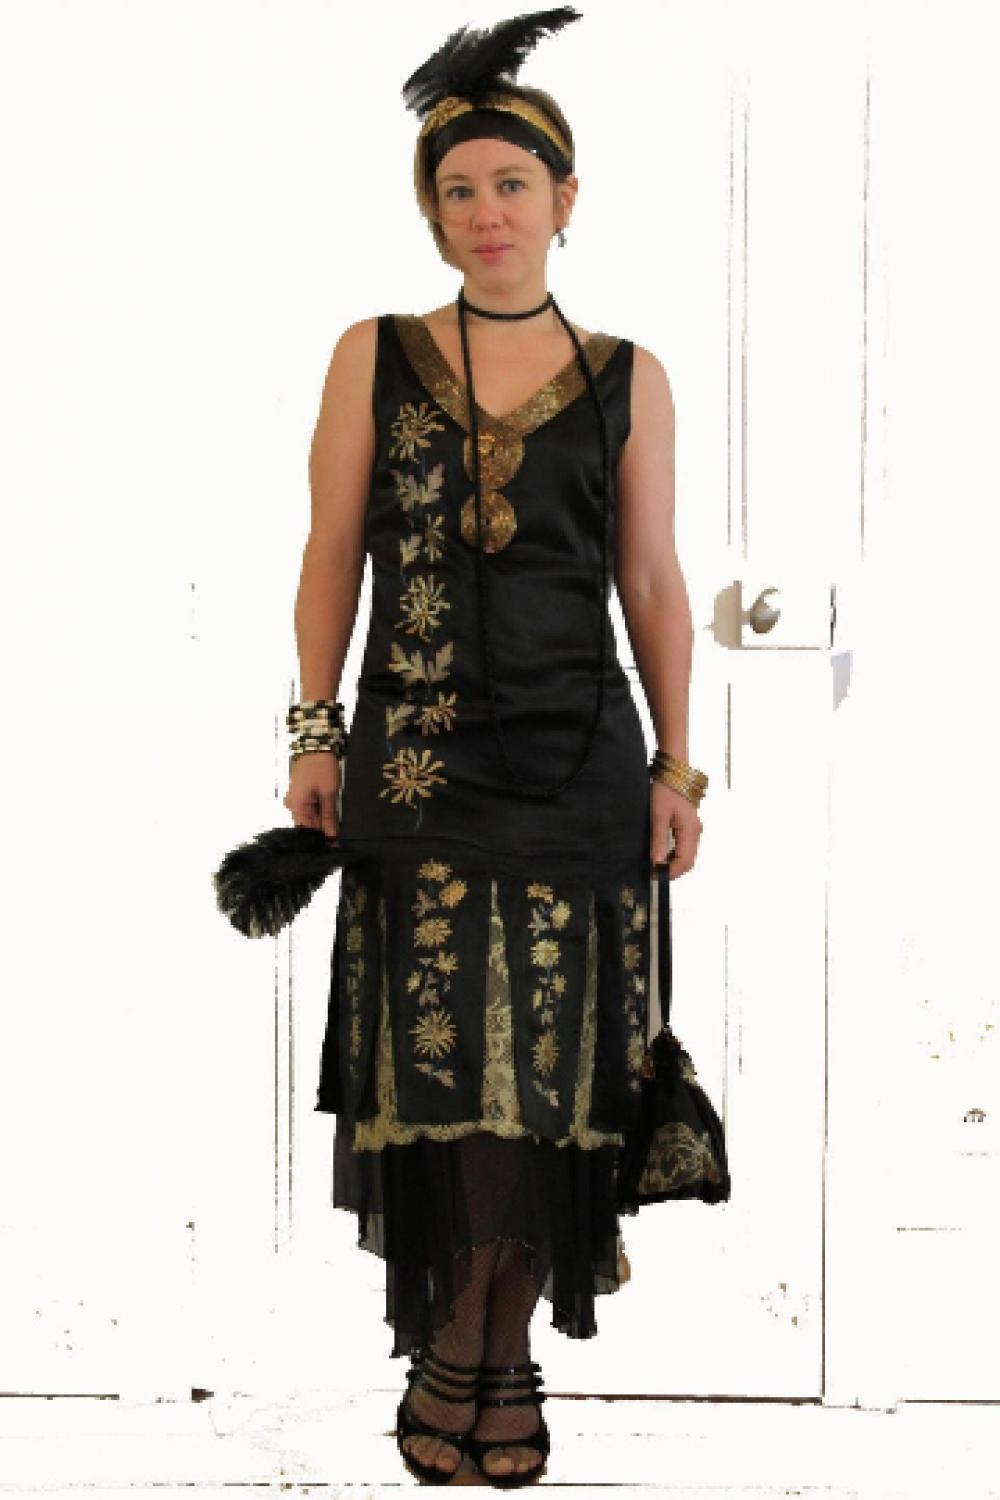 Robe Années 20 en satin de soie noir peint à la main d'un motif de fleur dorées à décolleté dos en dentelle dorée et sous jupe en mousseline--9995560469842